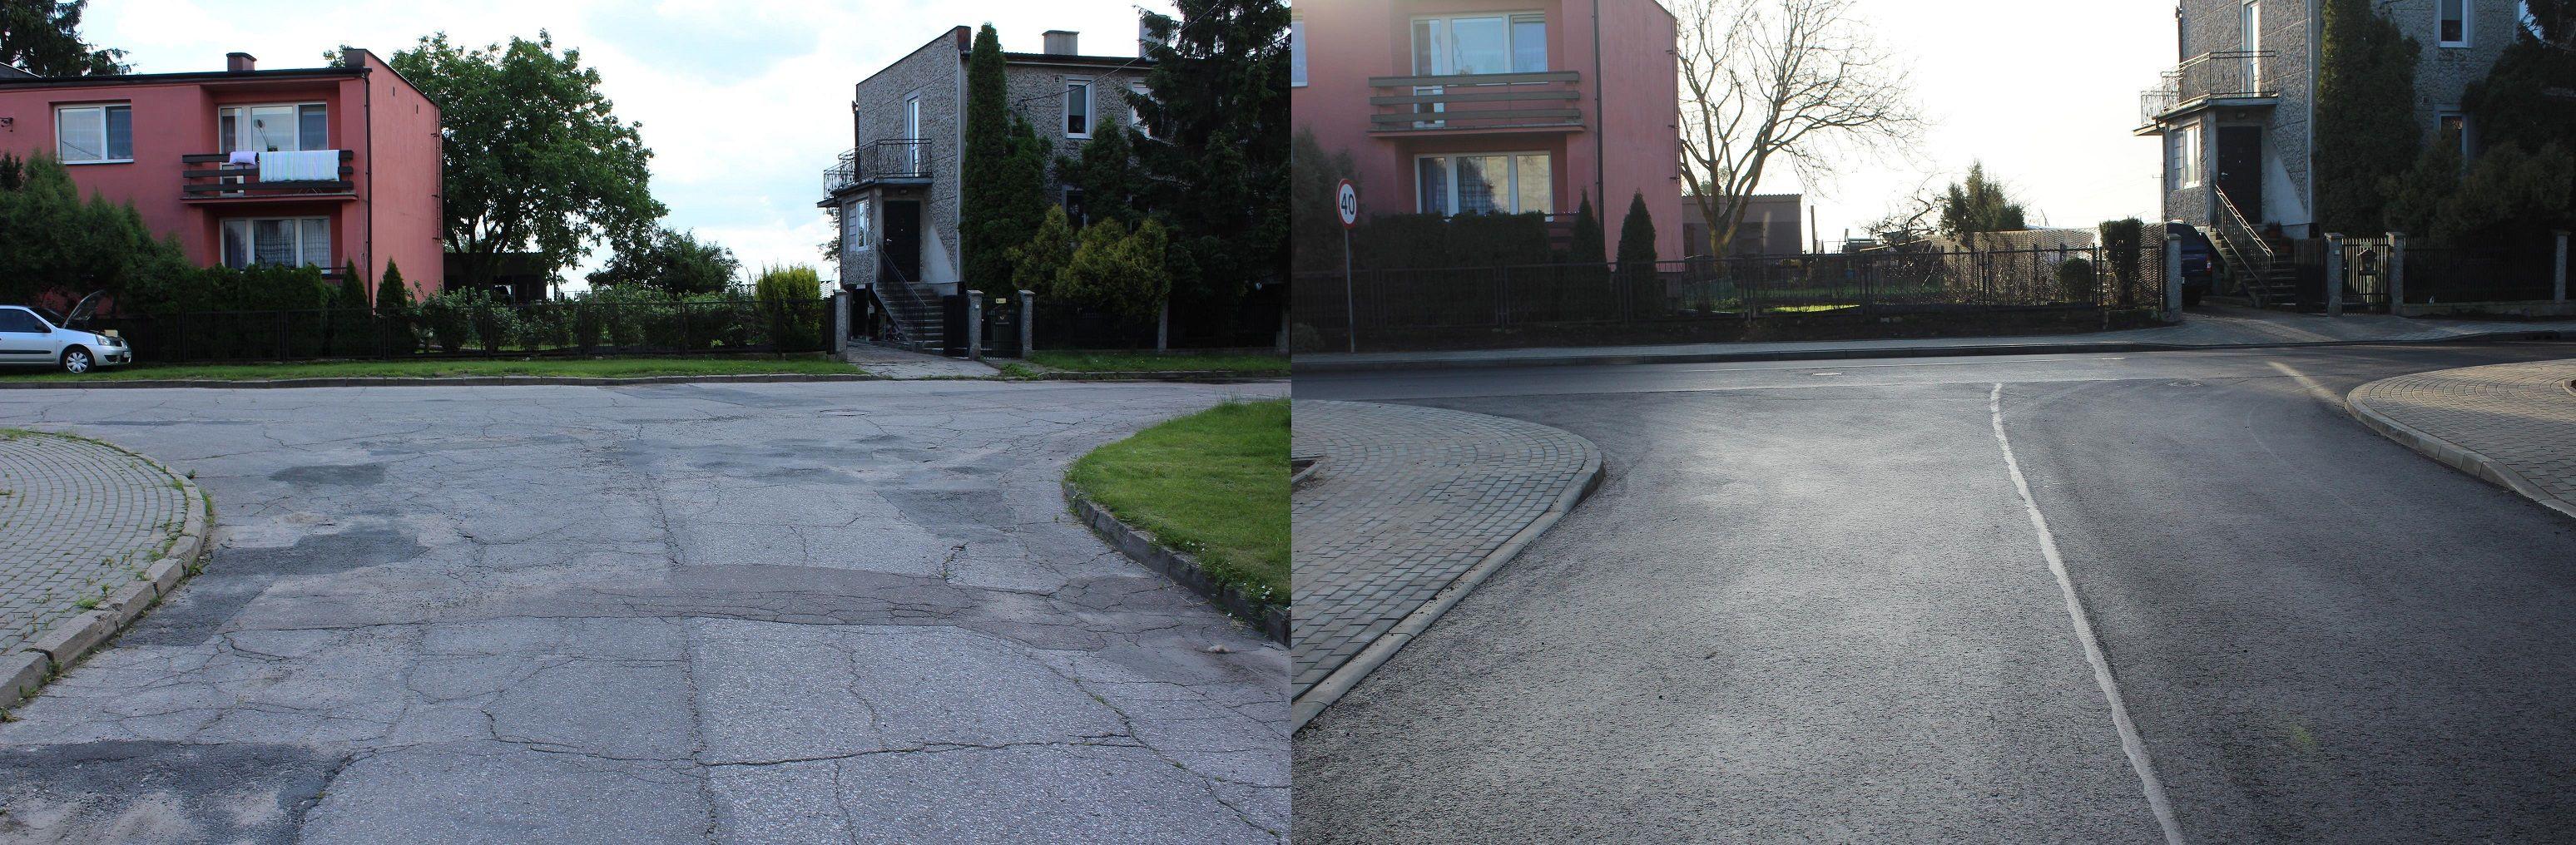 Przebudowa ulicy Jabłoniowej - stan przed i po - kliknięcie spowoduje powiększenie obrazka